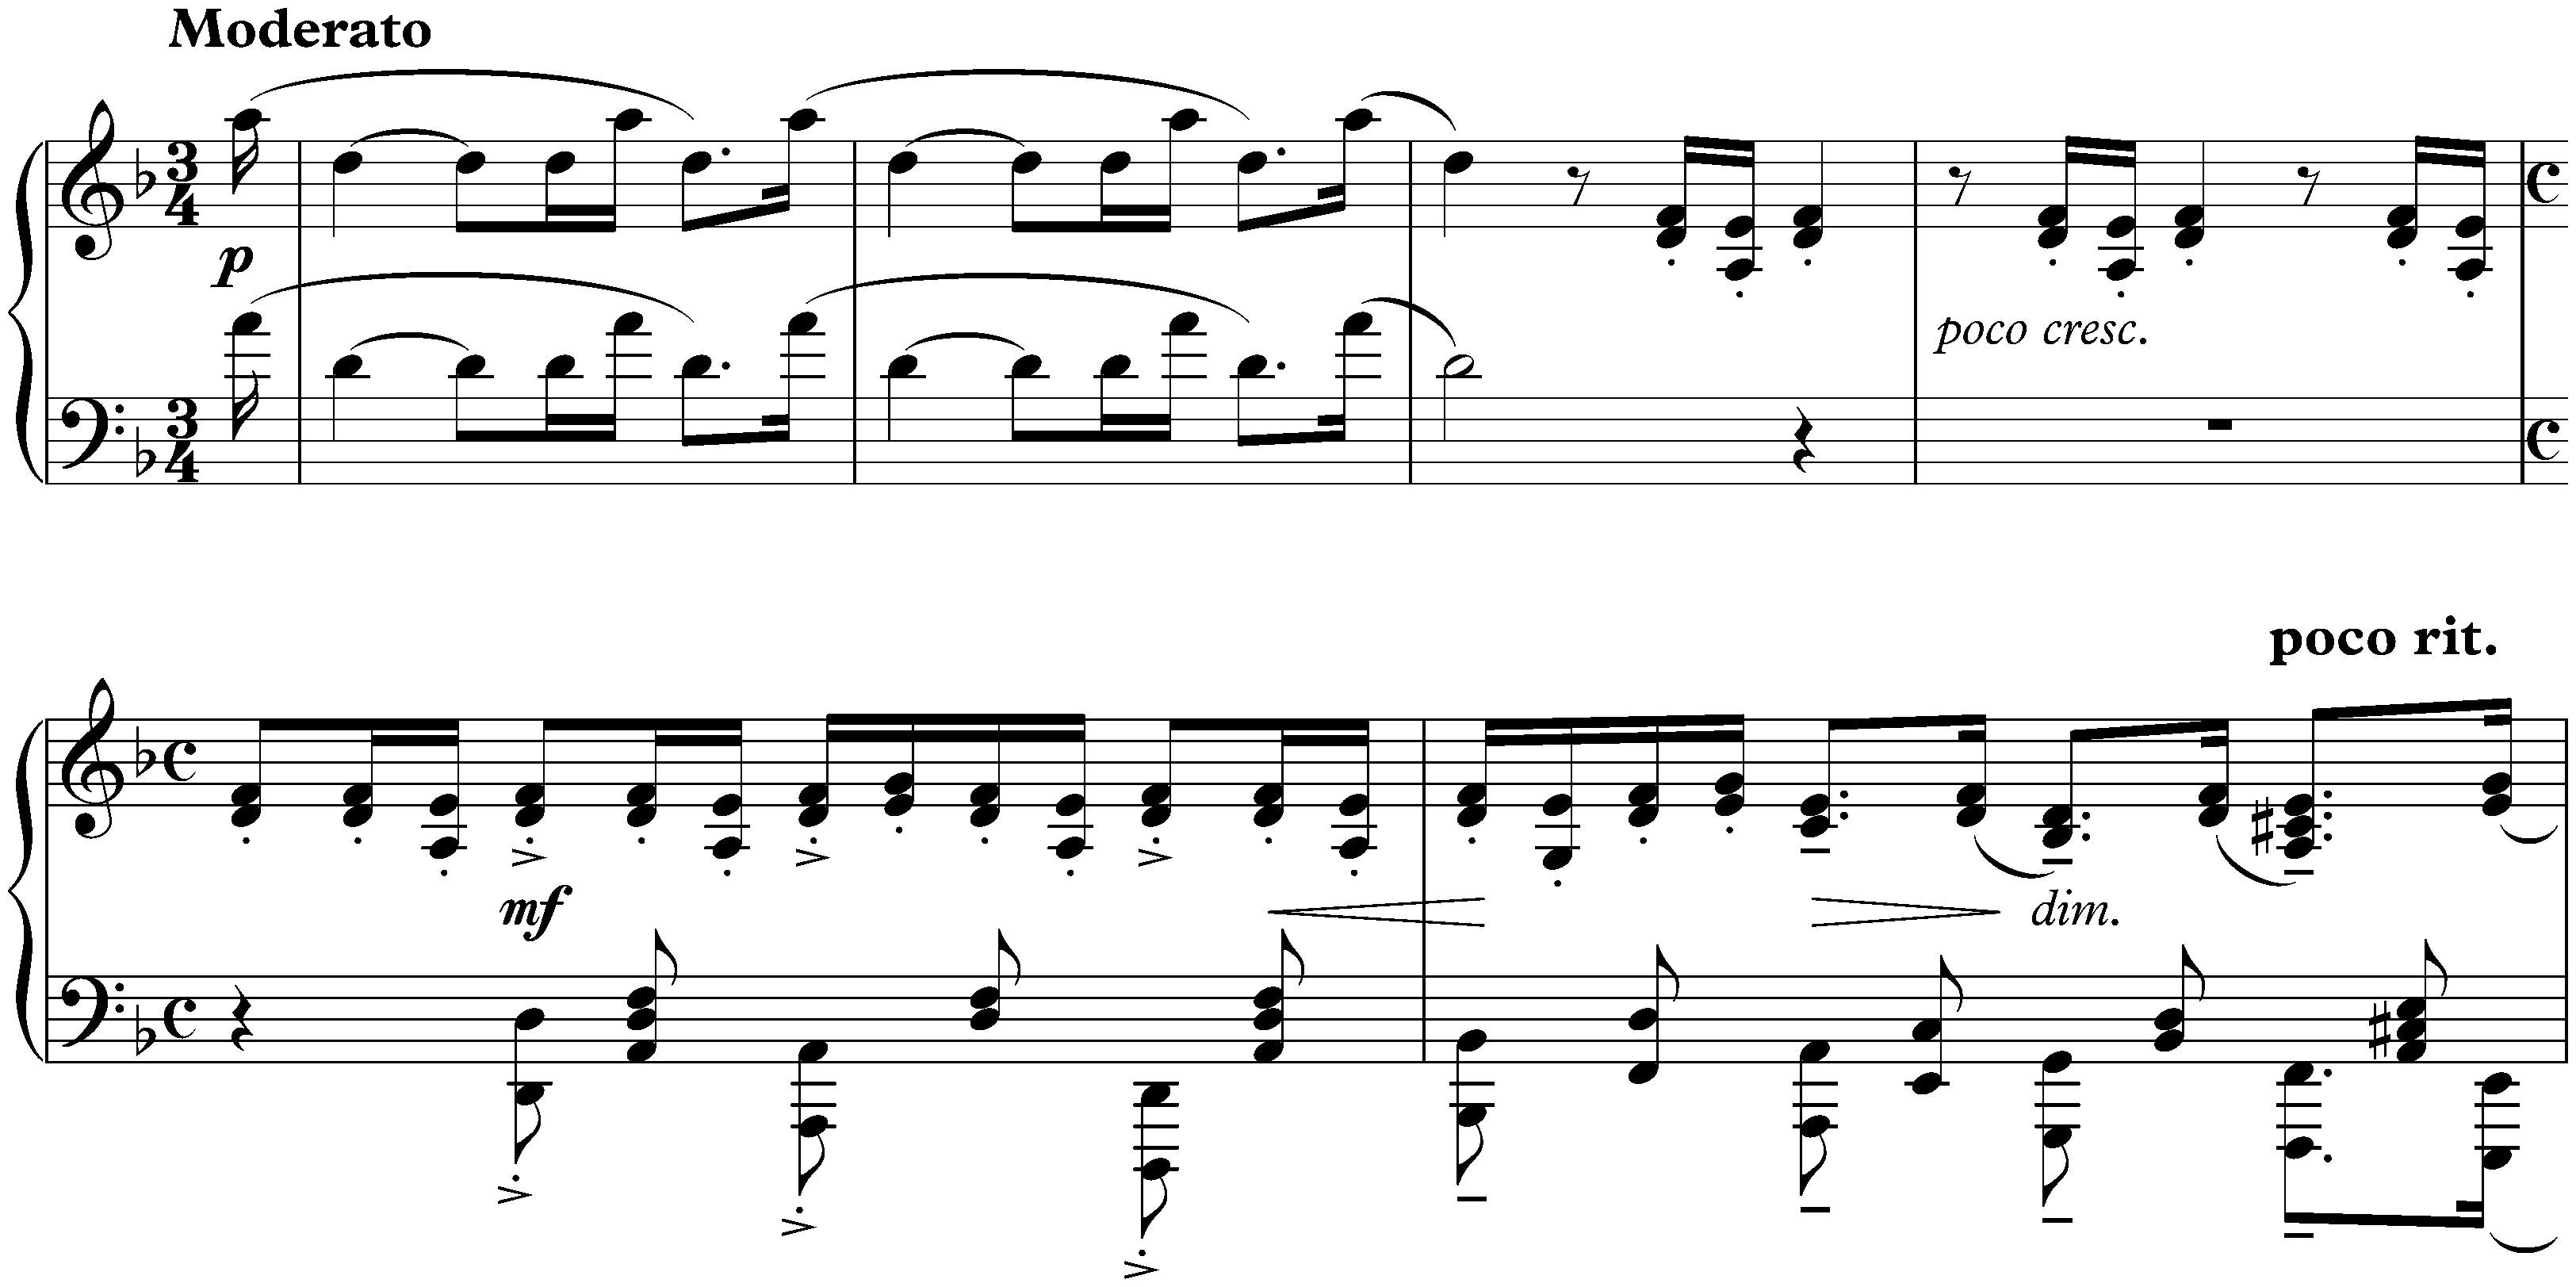 Études-tableaux, op. 33; 5. D minor